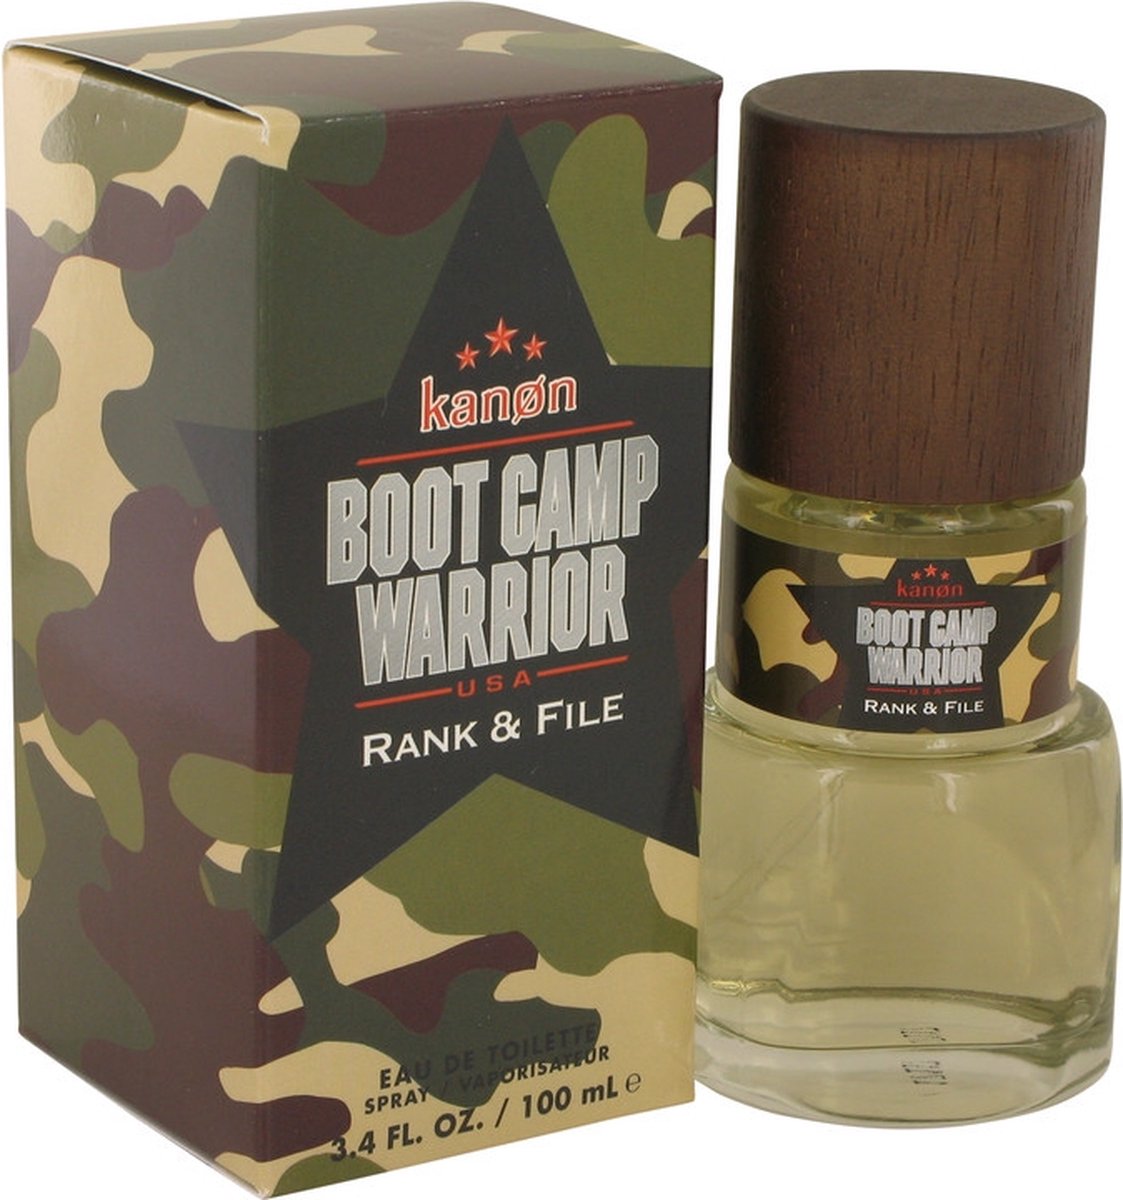 Kanon Boot Camp Warrior Rank & File by Kanon 100 ml - Eau De Toilette Spray